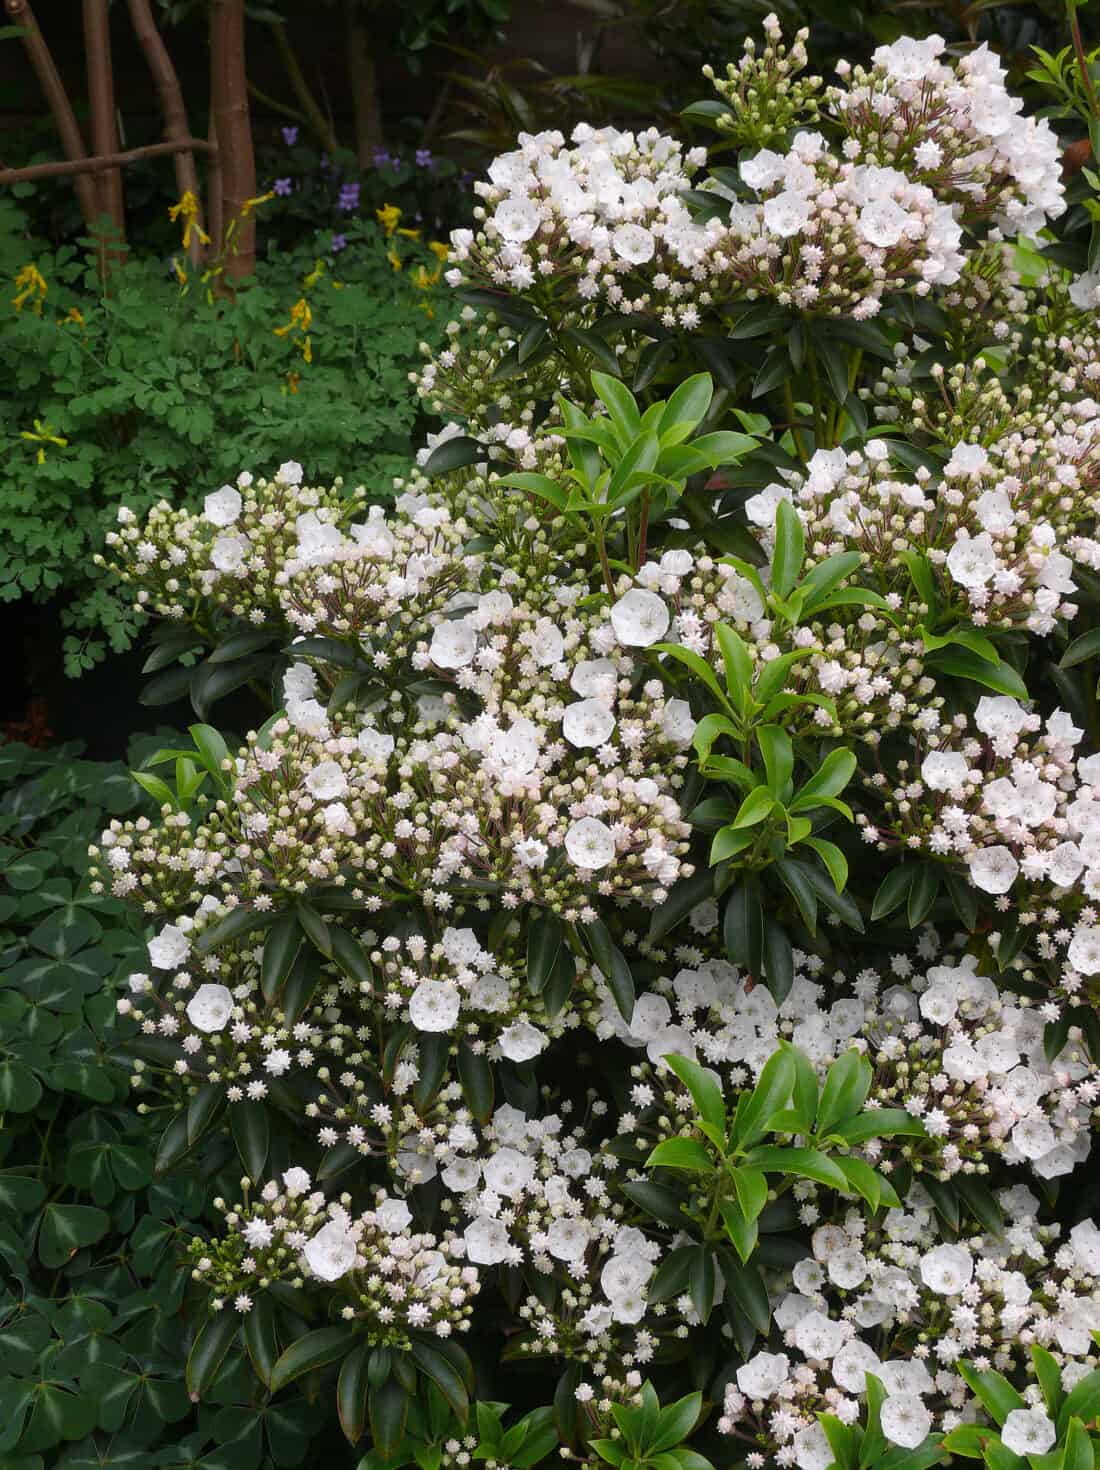 A bush with white flowers. kalmia latifolia 'elf'.